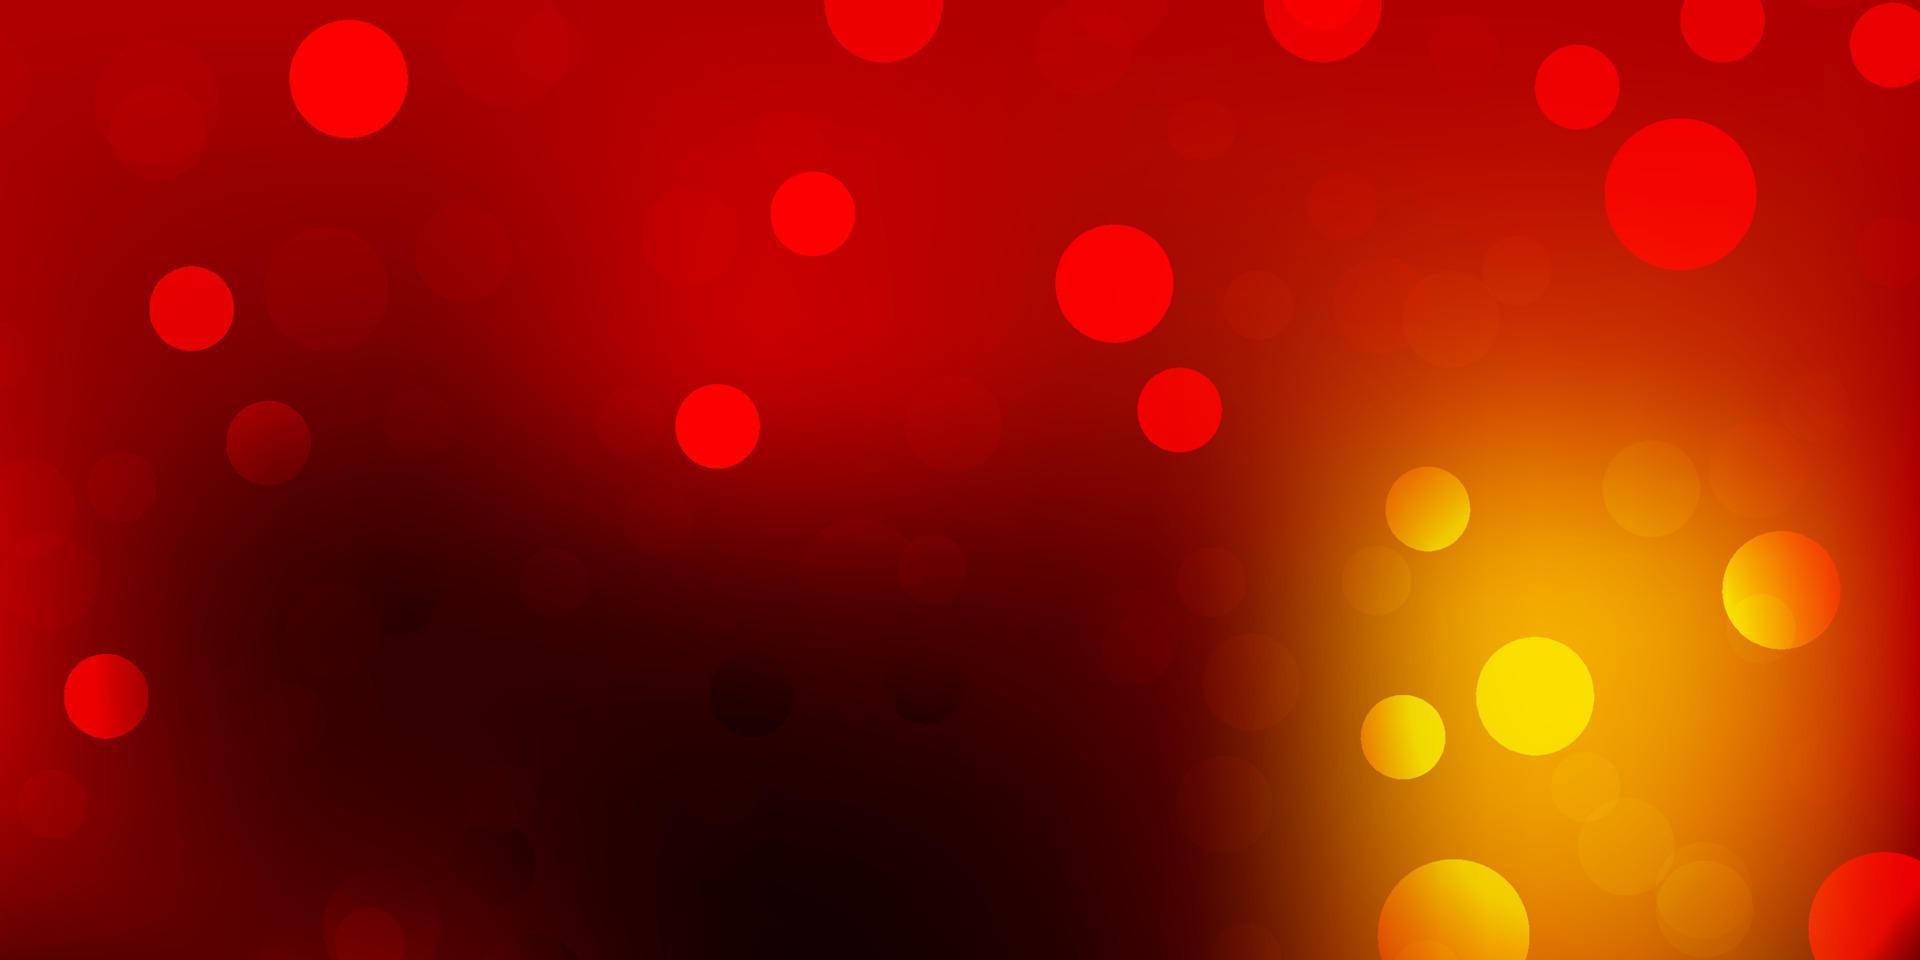 luz vermelha, amarelo padrão de vetor com esferas.